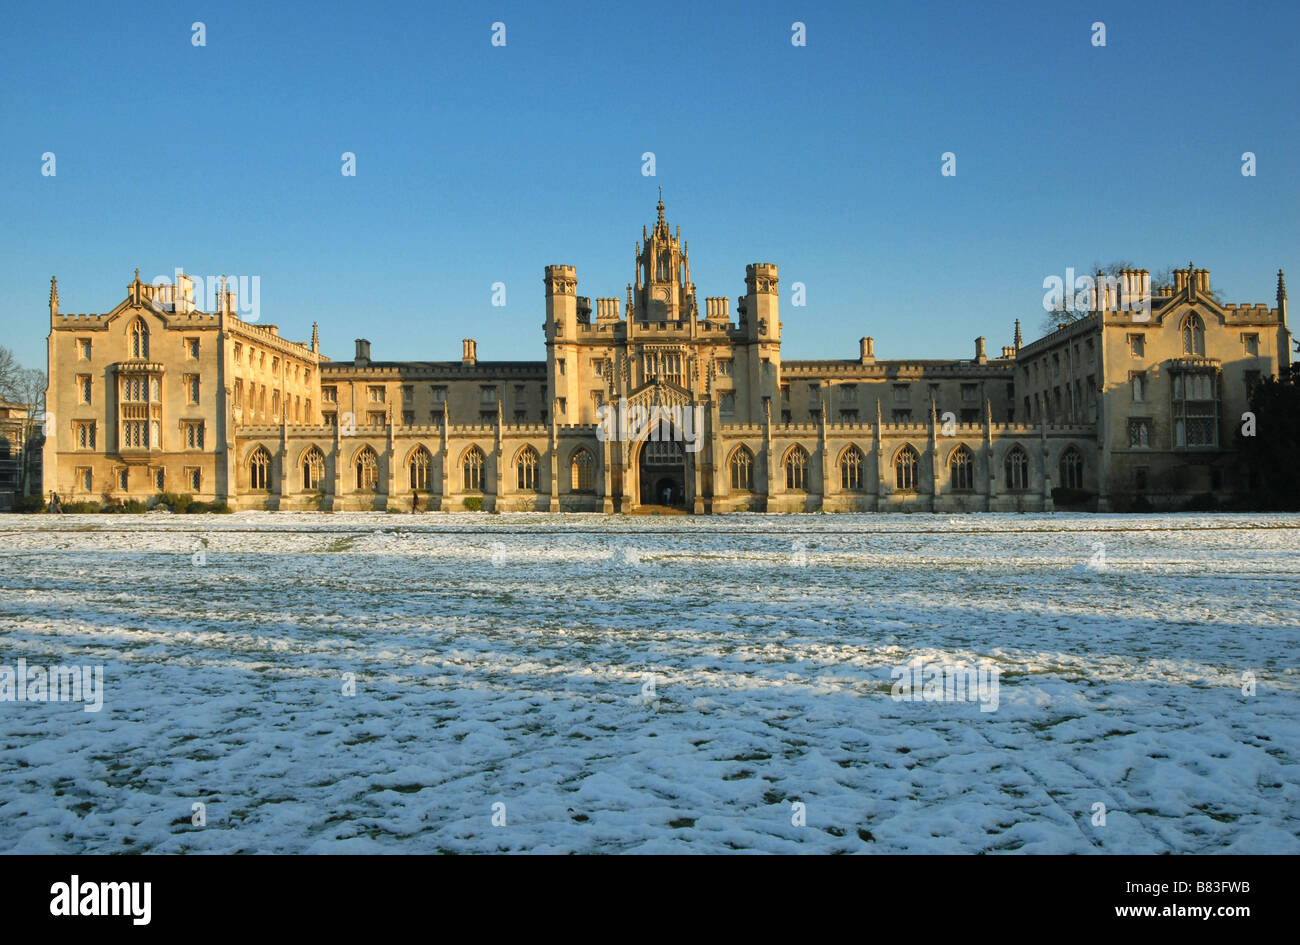 Das neue Gericht von St. Johns College in Cambridge nach einem Winter Schneefall Stockfoto